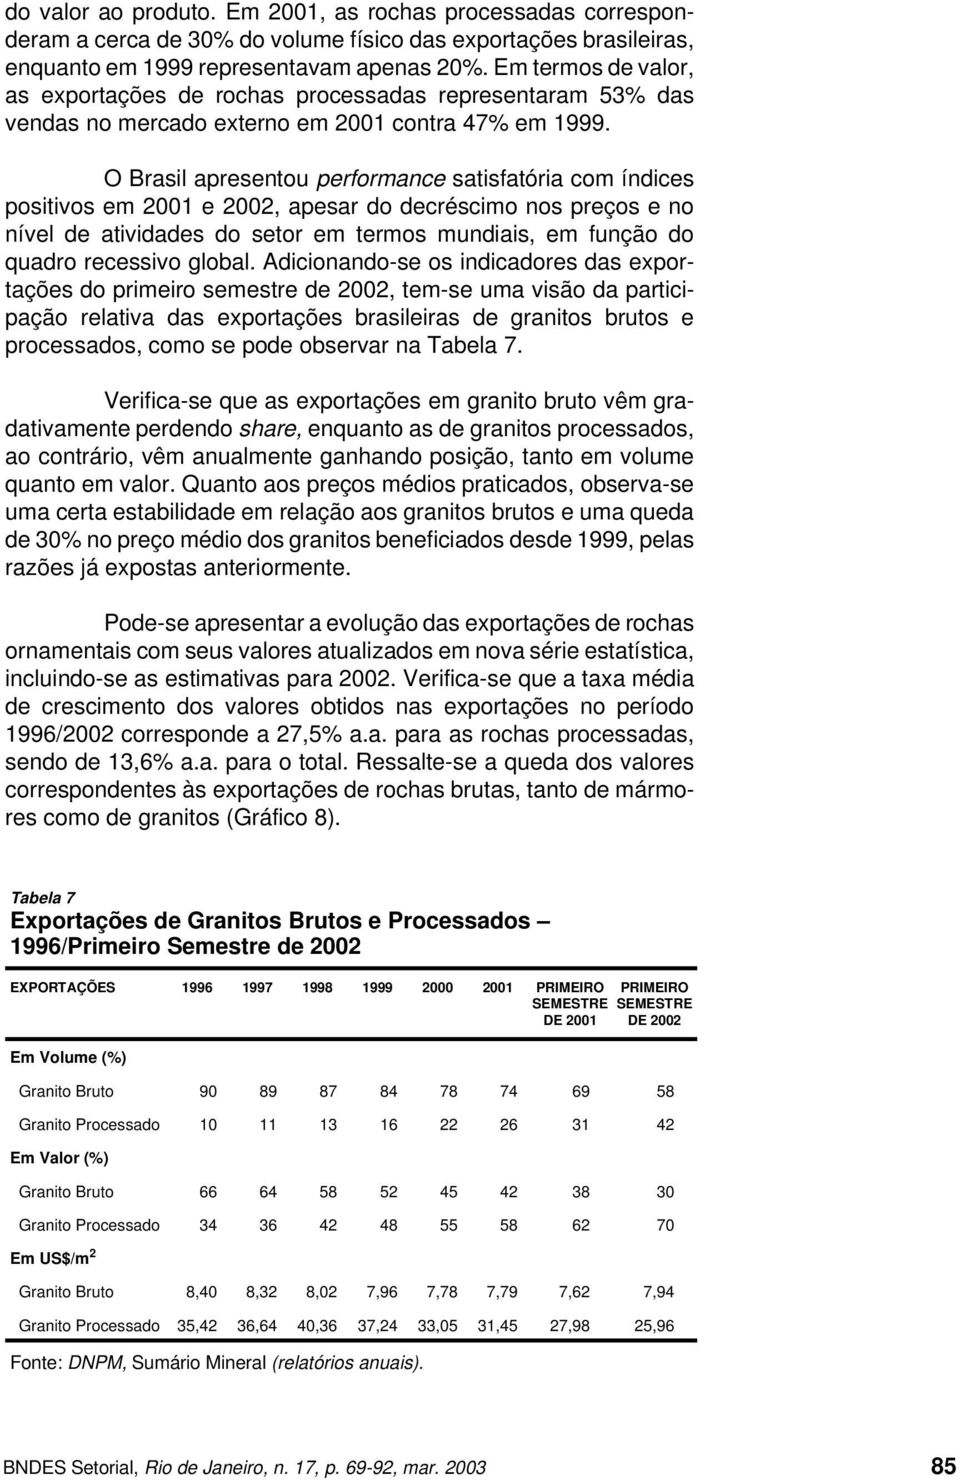 O Brasil apresentou performance satisfatória com índices positivos em 2001 e 2002, apesar do decréscimo nos preços e no nível de atividades do setor em termos mundiais, em função do quadro recessivo